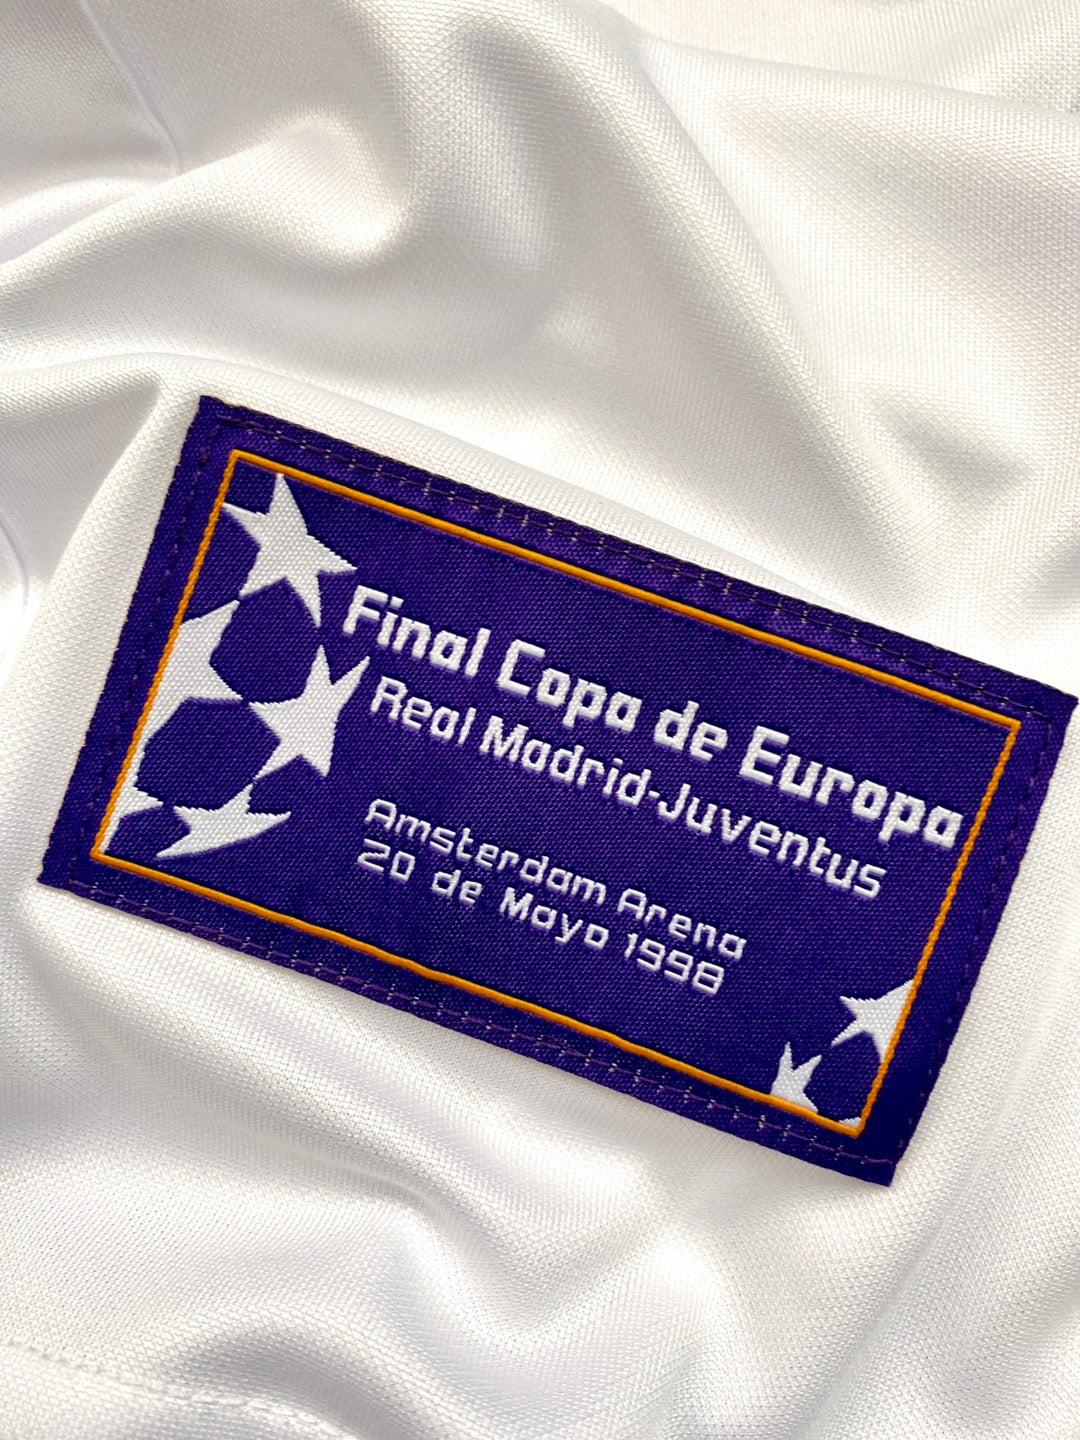 Jersey Retro Real Madrid Campeón de Europa 1998 La Septima etiqueta